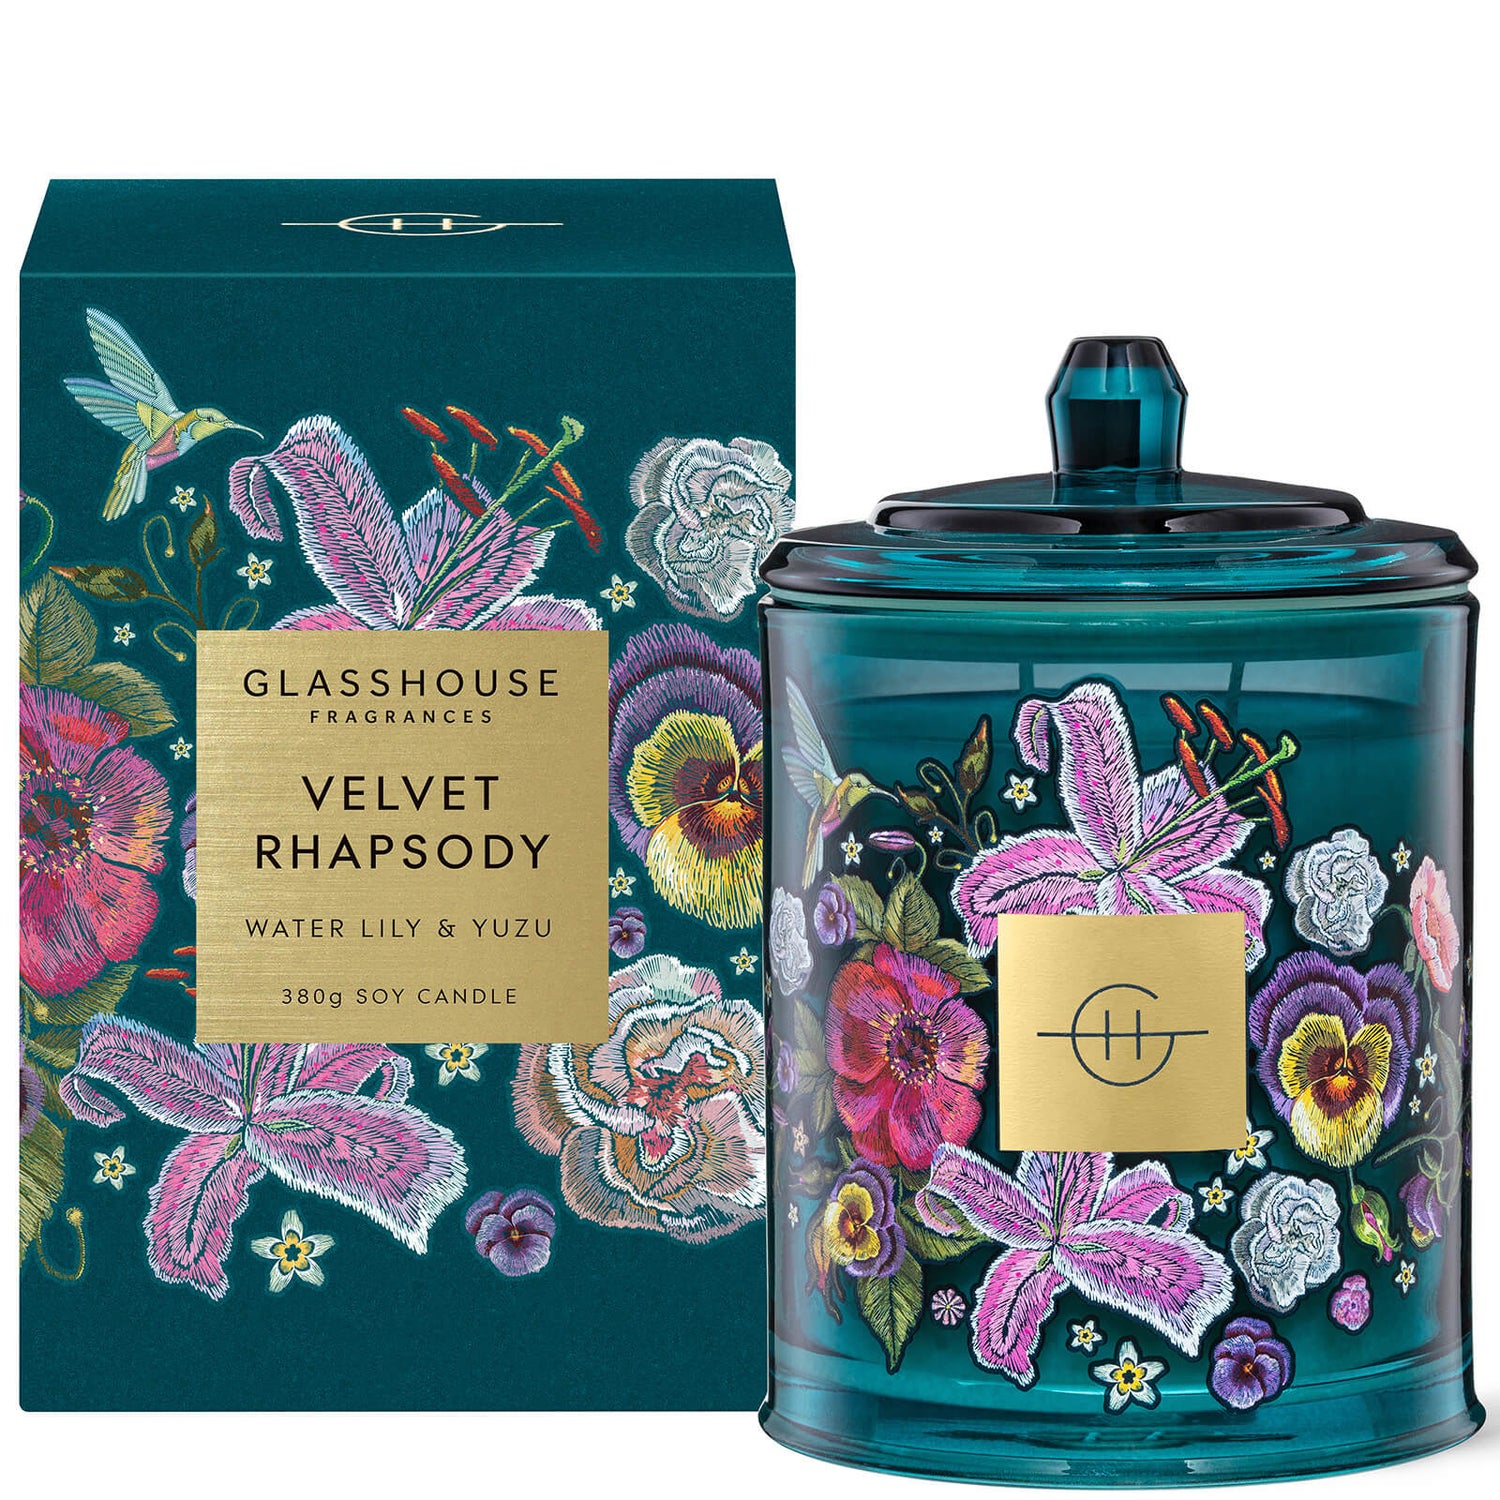 Glasshouse Fragrances Velvet Rhapsody Candle 380g